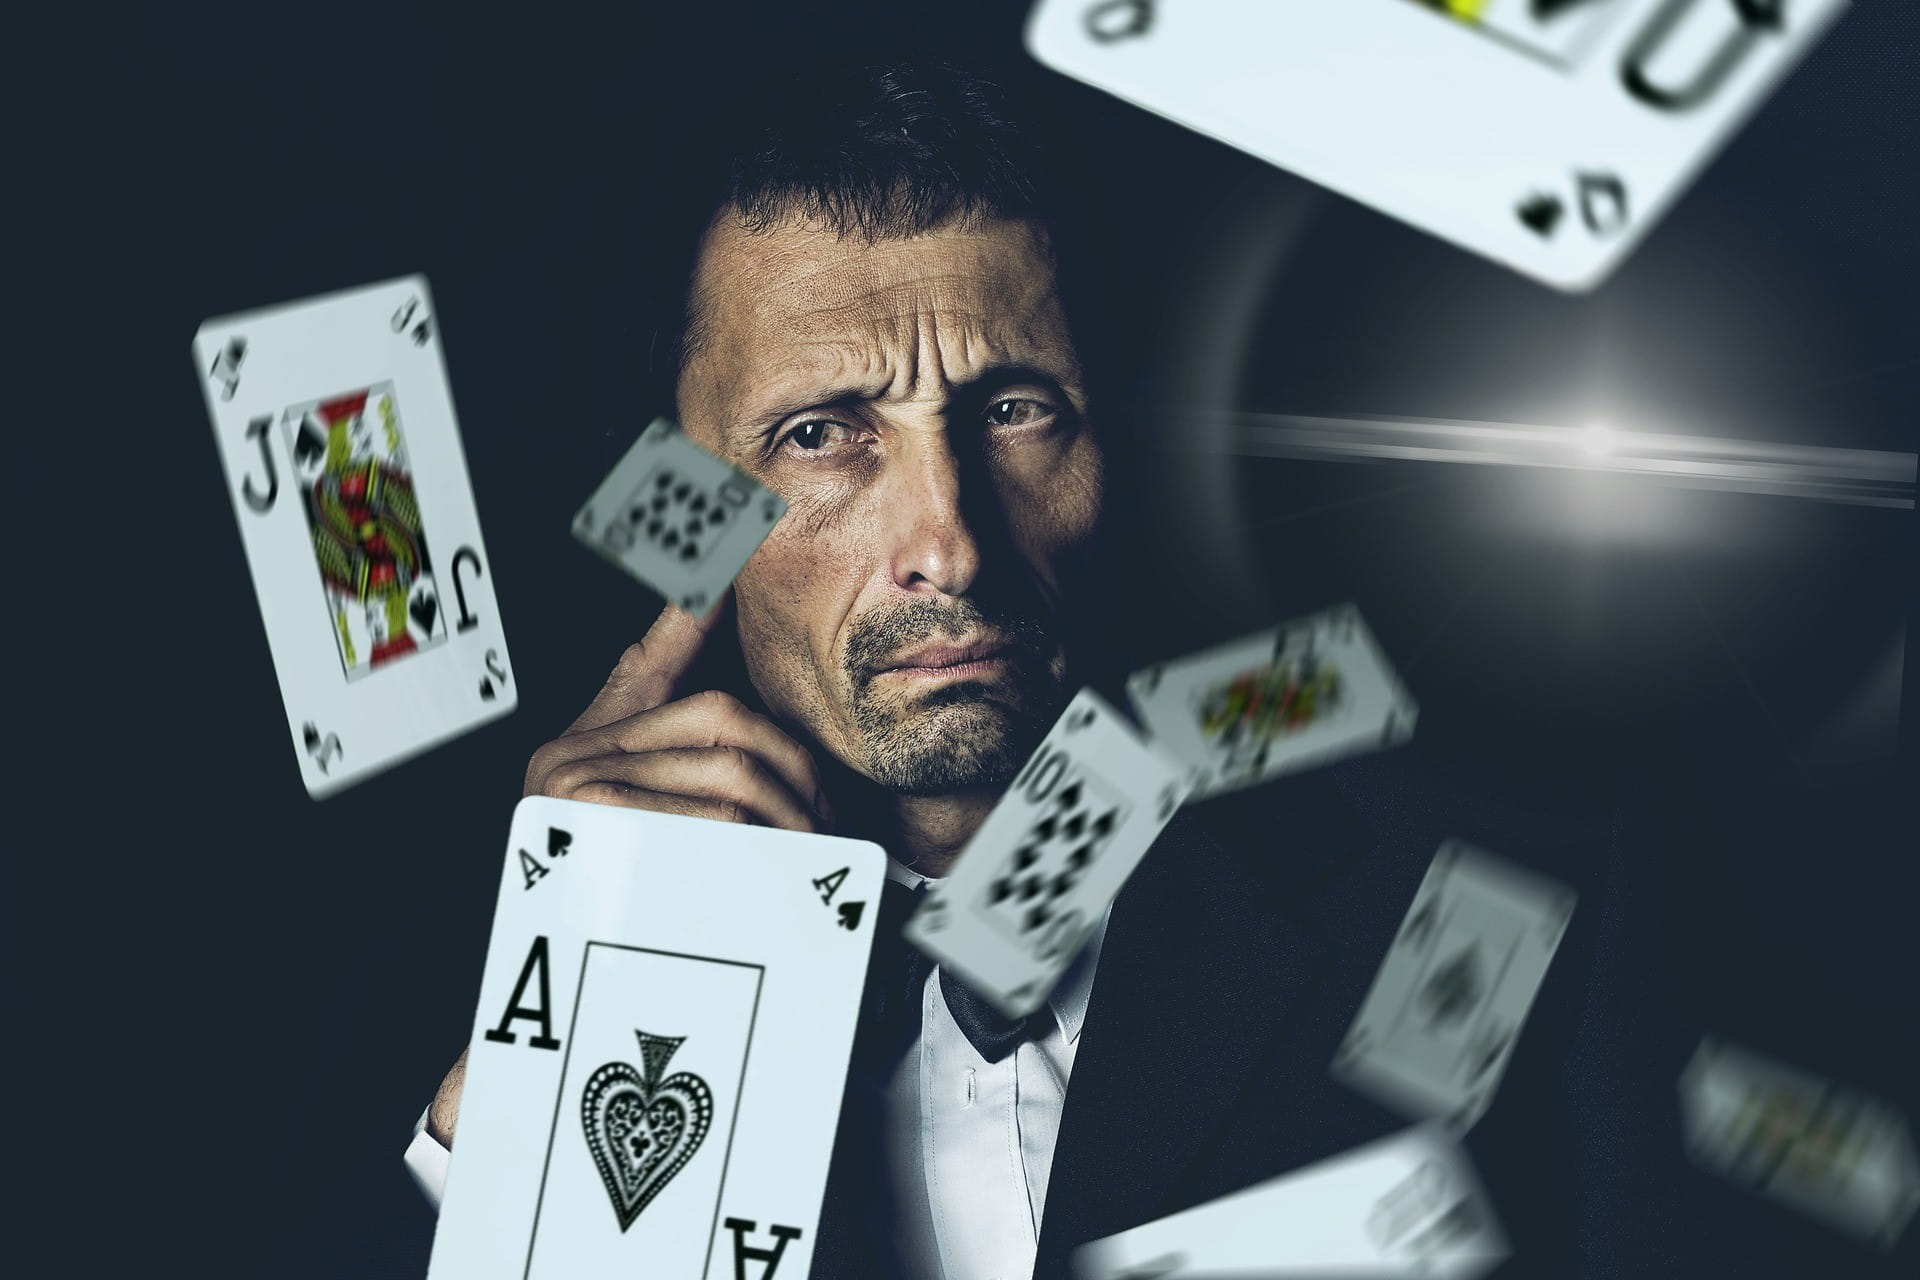 Vor einem ernst schauenden Mann fliegen mehrere Pokerkarten durch die Luft.